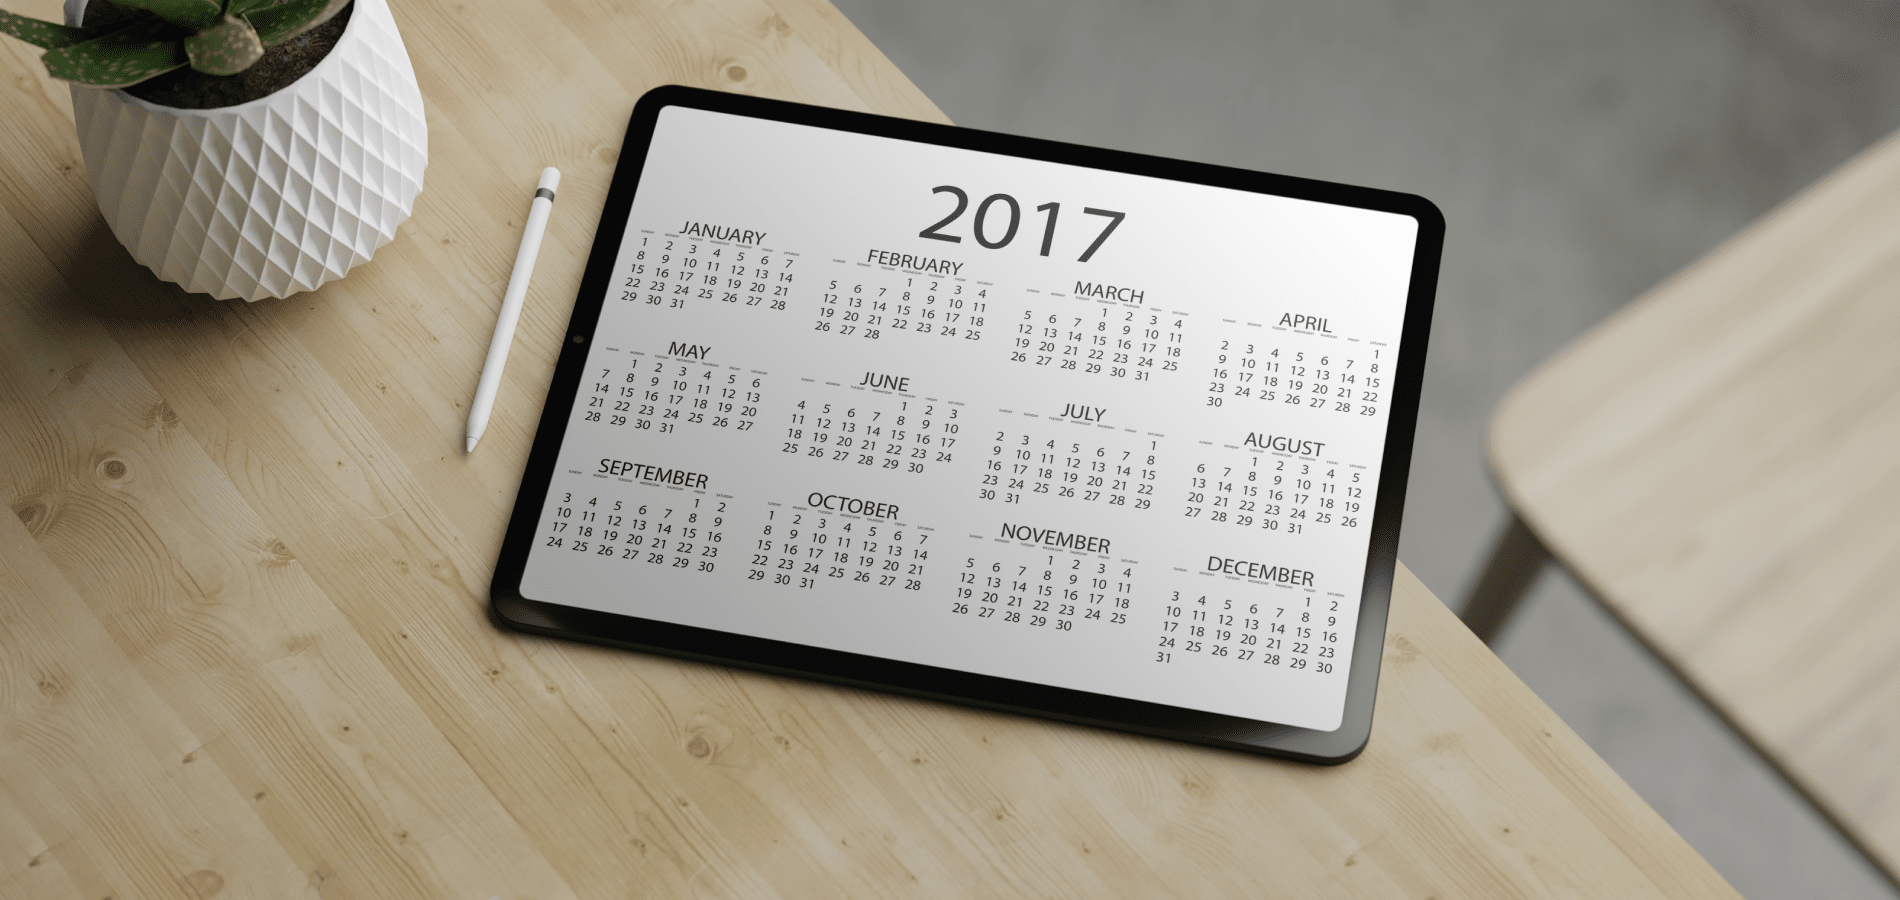 Tablet with a 2017 calendar